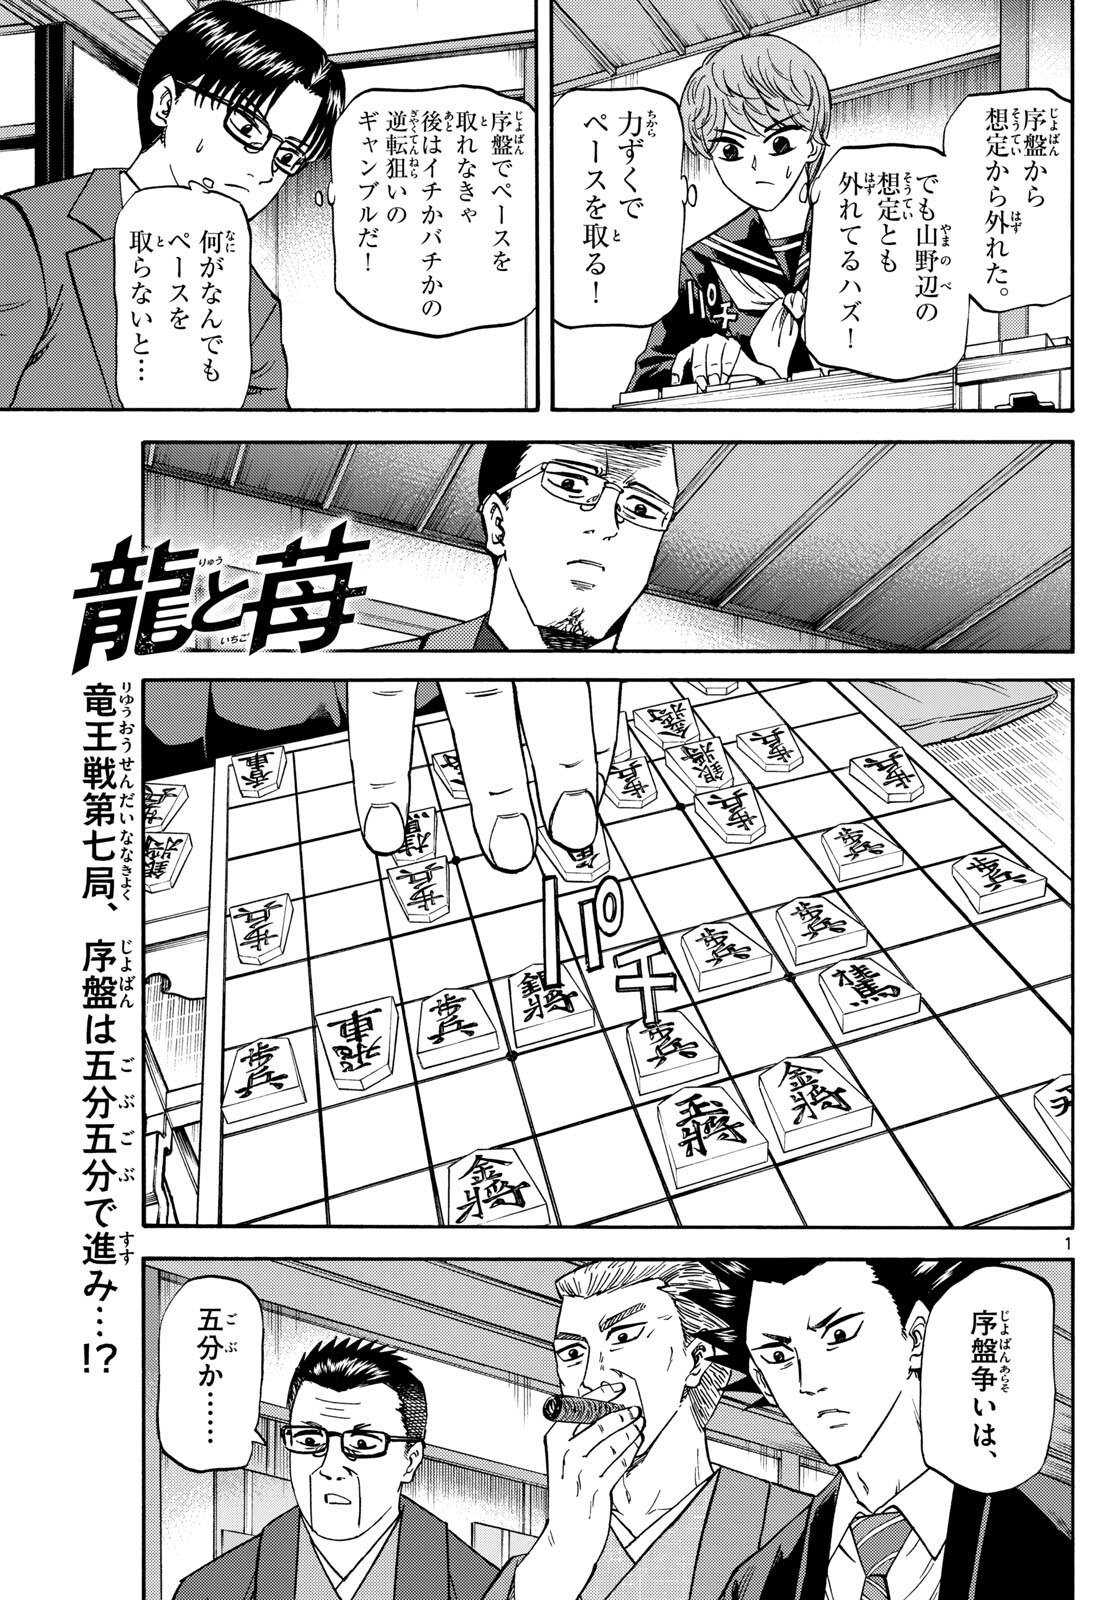 Tatsu to Ichigo - Chapter 176 - Page 1